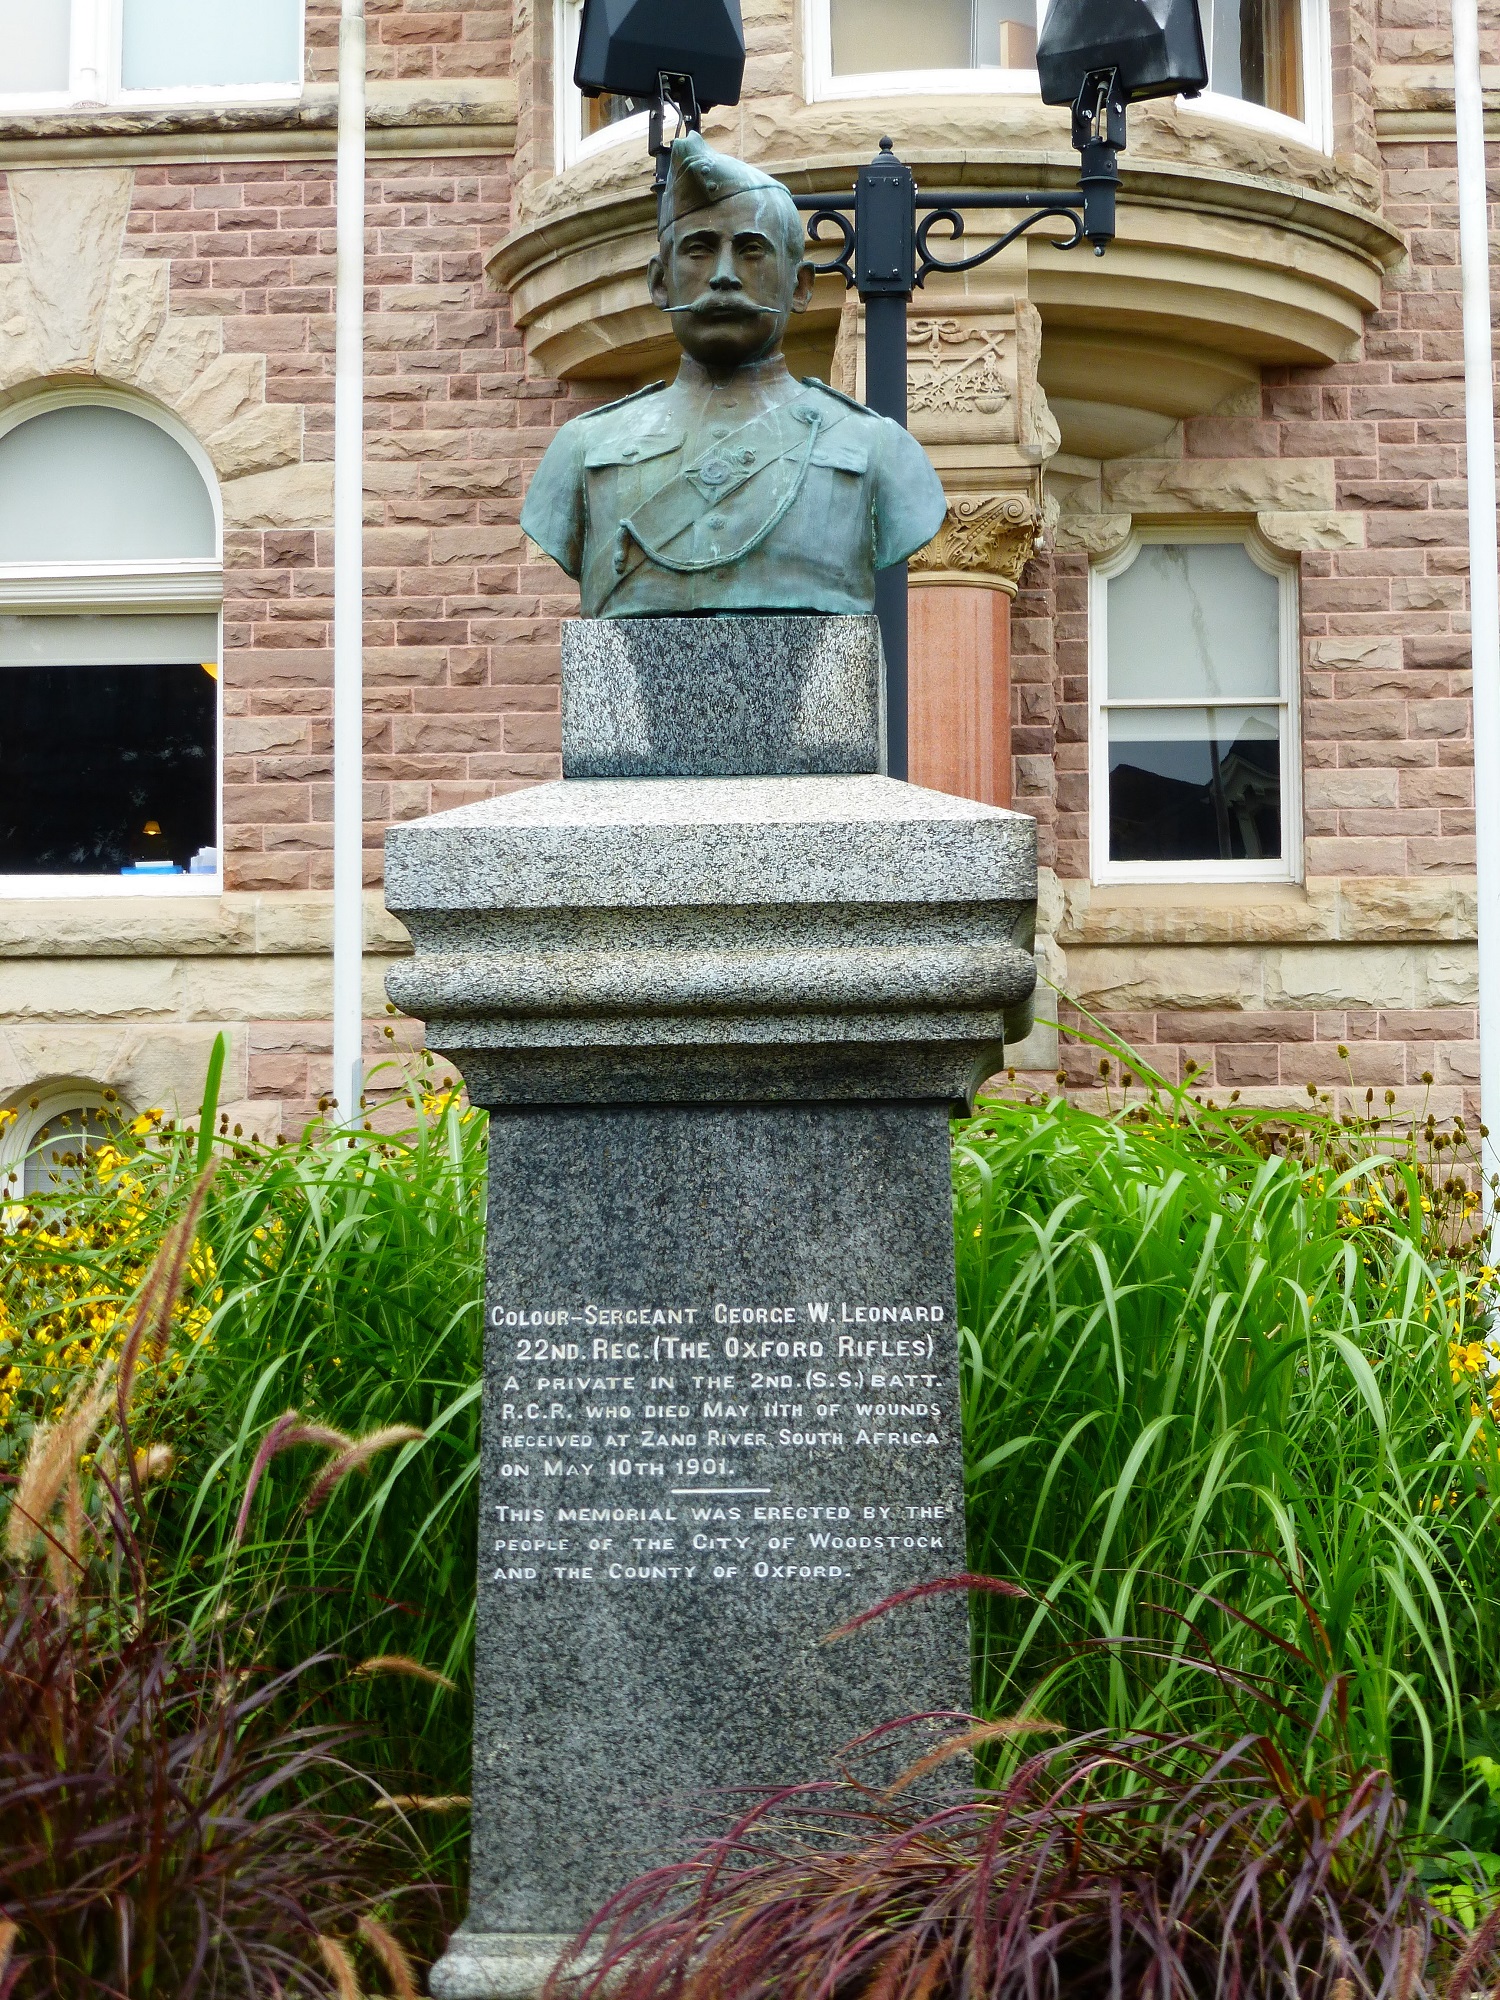 Monument commémoratif Leonard et Davidson